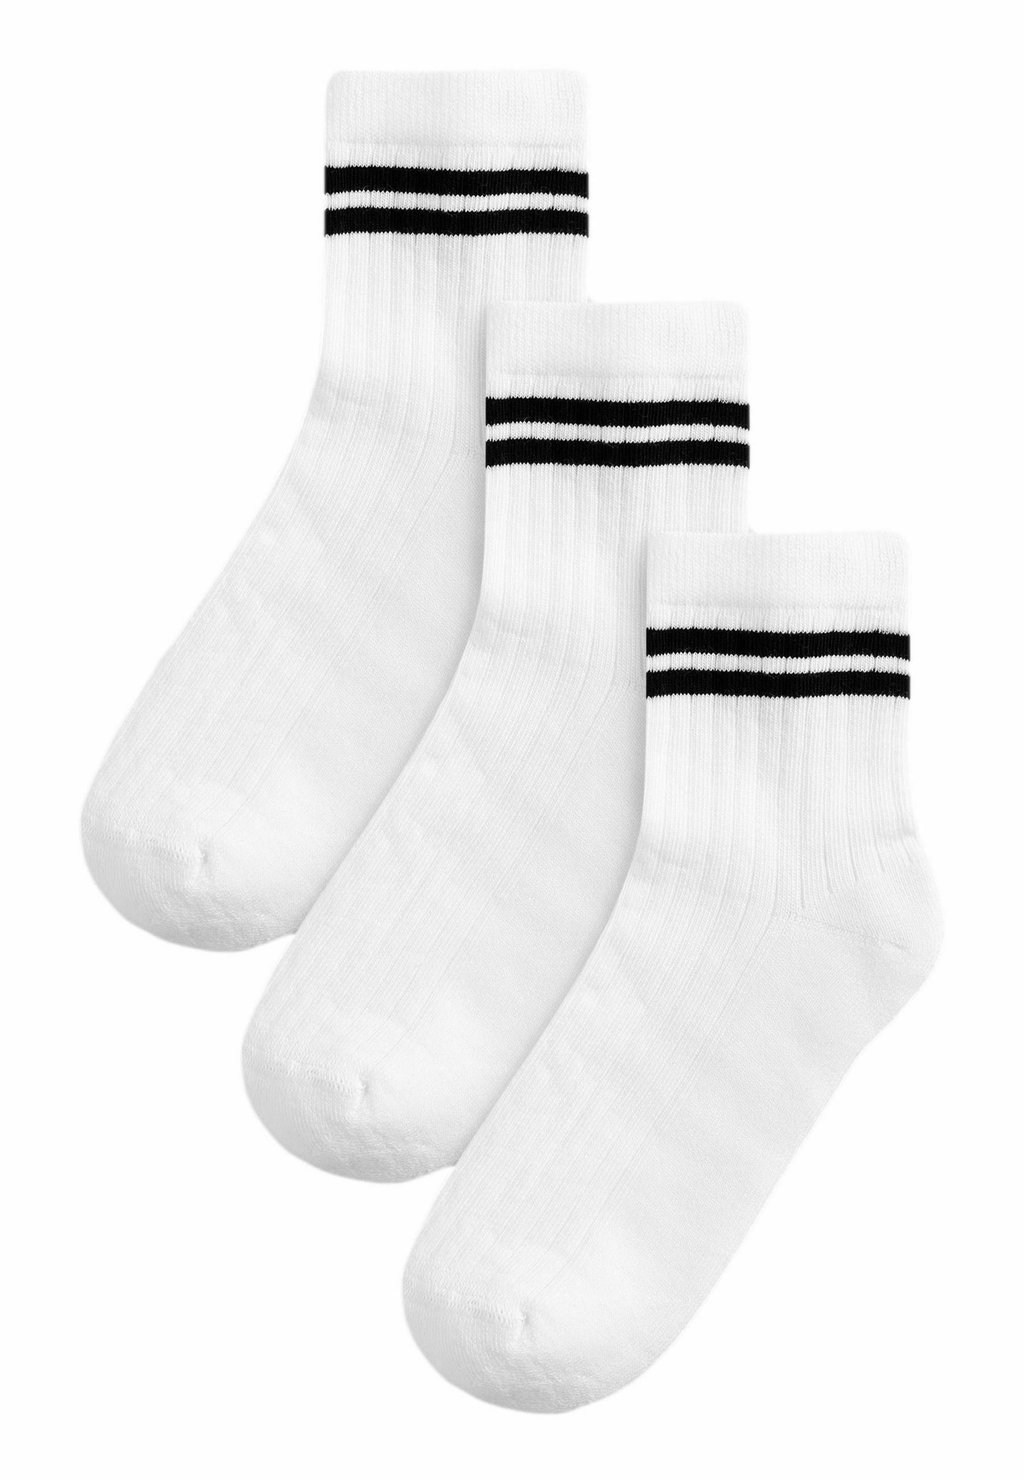 Носки Cushioned 3 Pack Next, цвет white black stripe носки rich cushioned 3 pack next цвет neutral